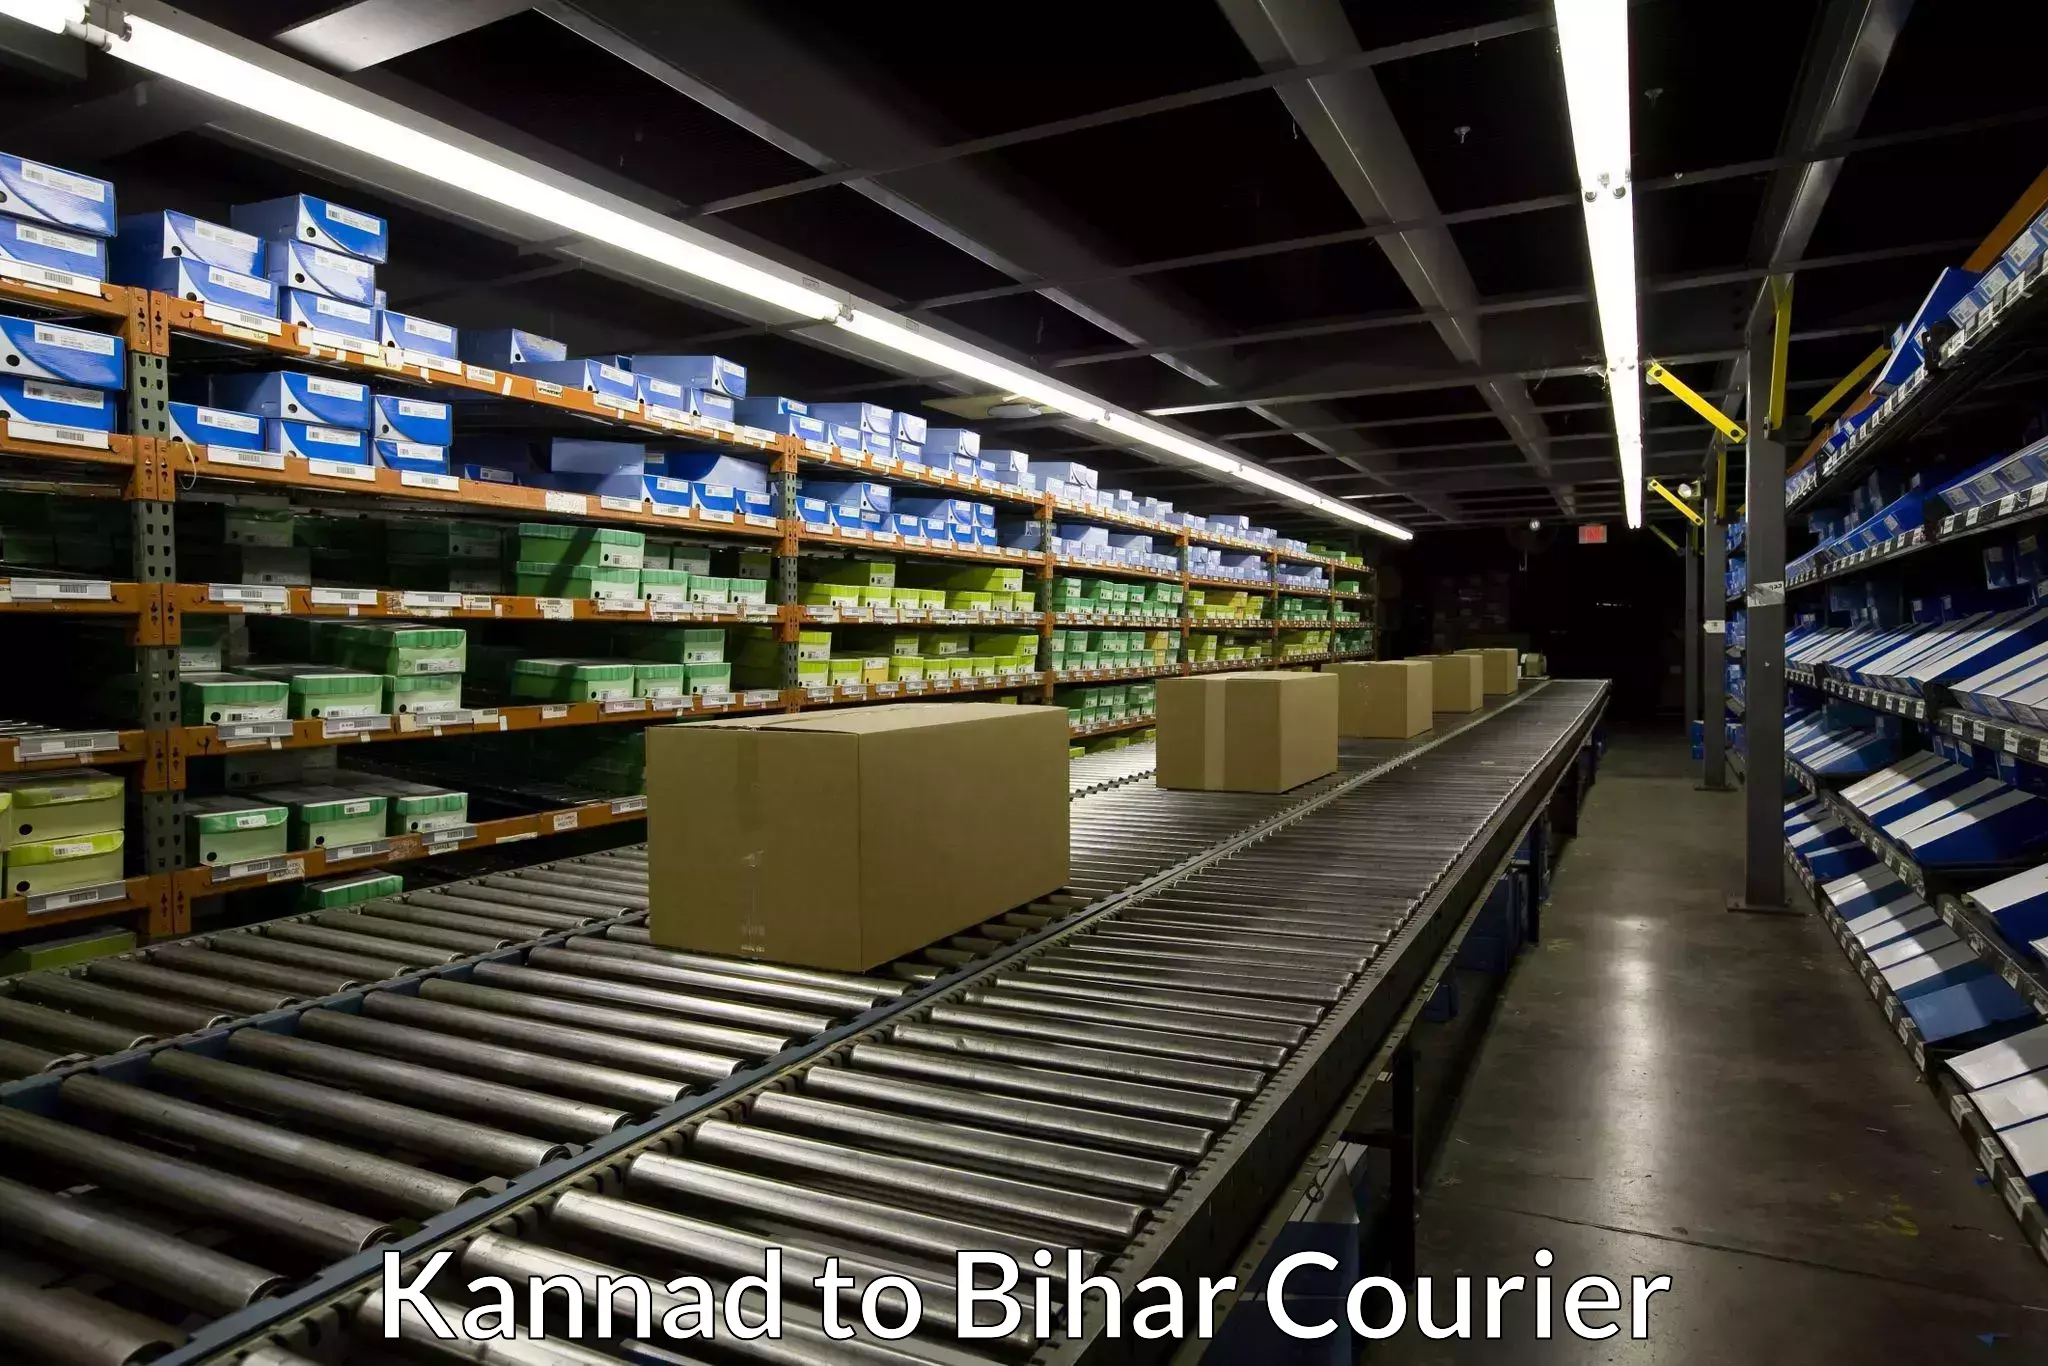 Cargo courier service in Kannad to Goh Aurangabad